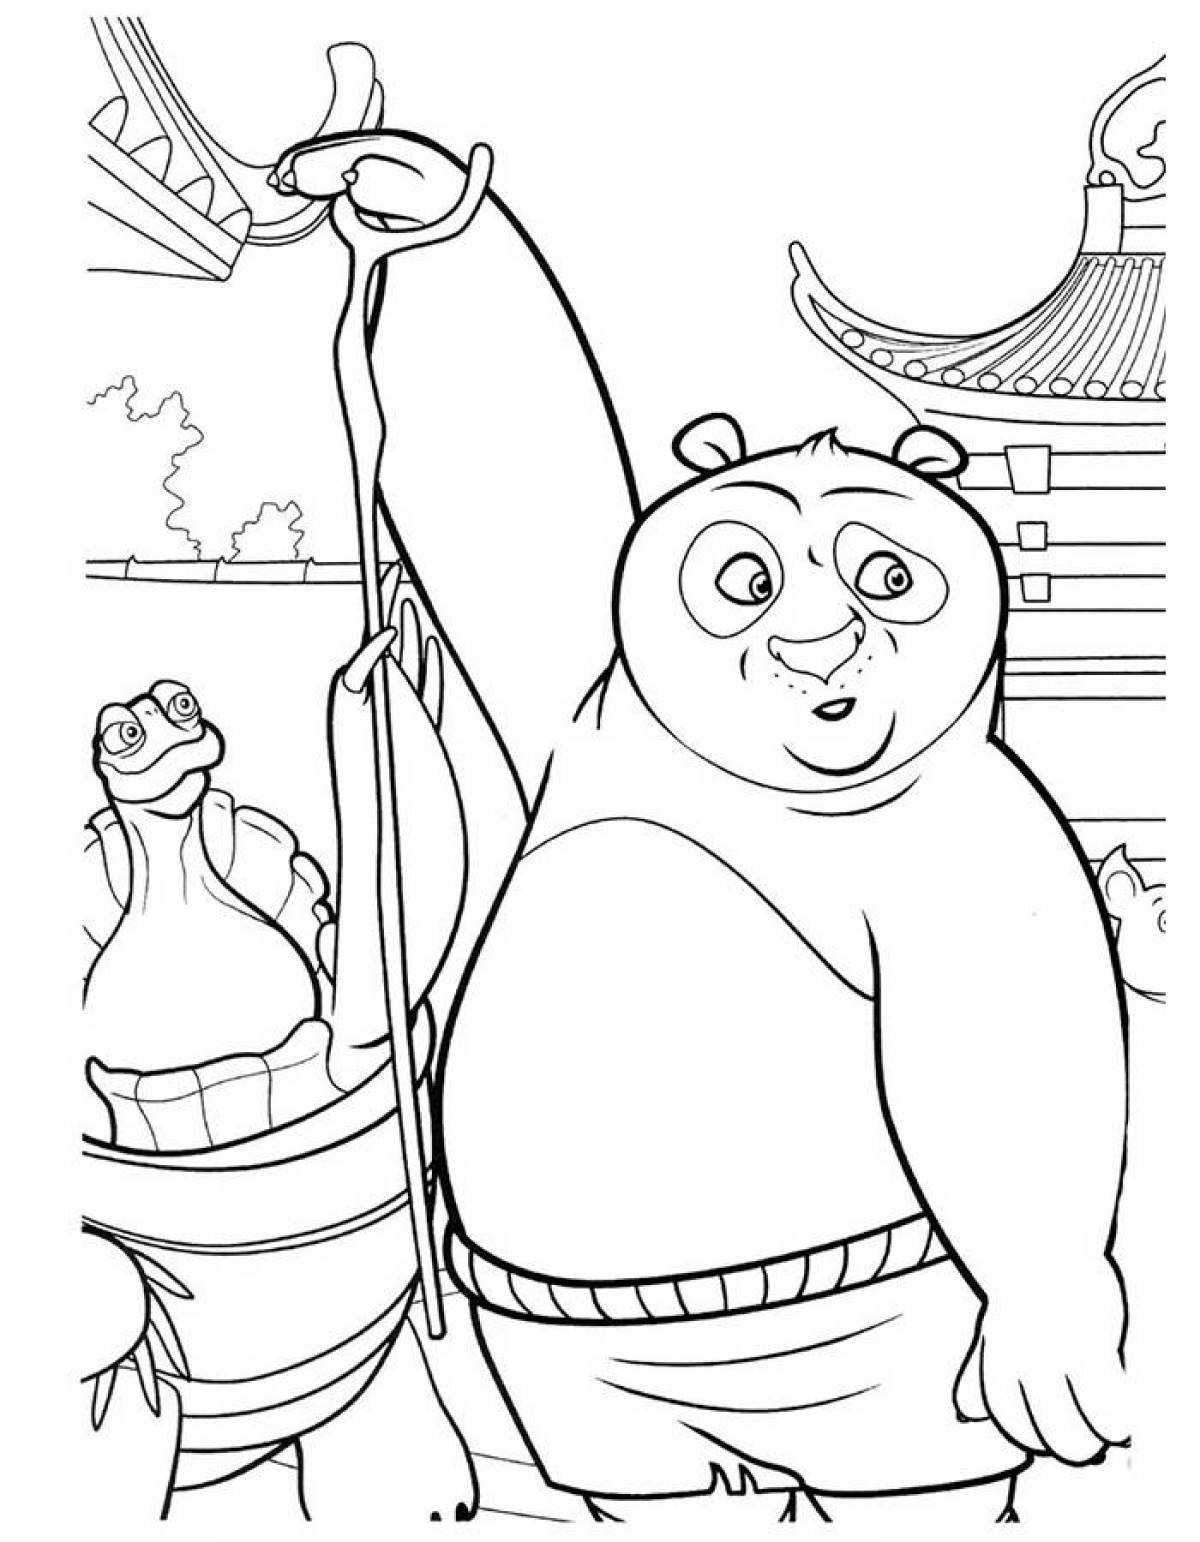 Kung fu panda #1